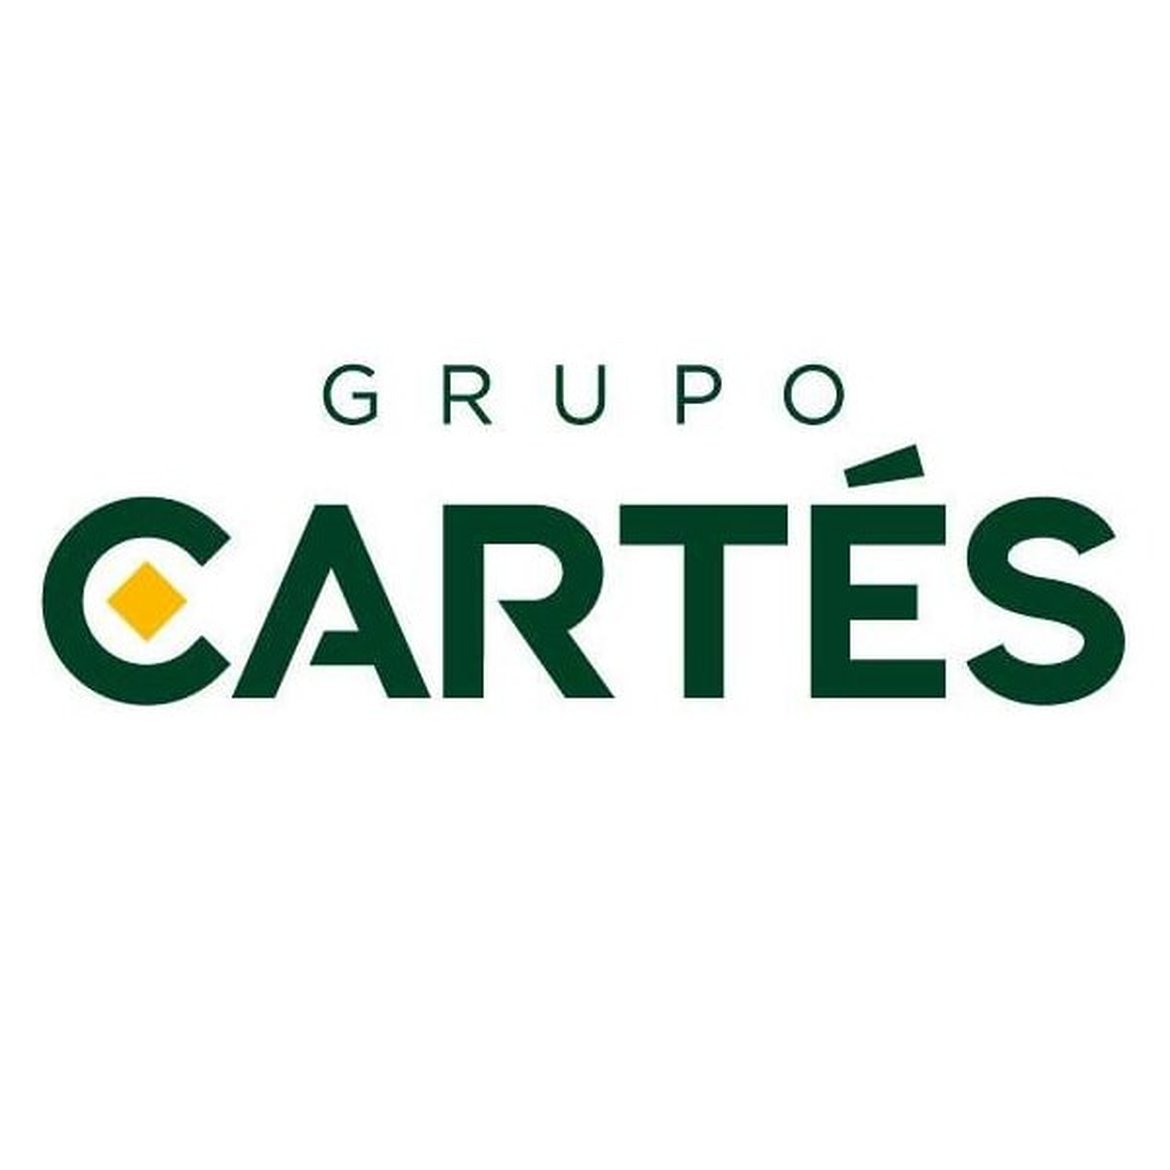 Grupo Cartés:  Enterprise Architecture